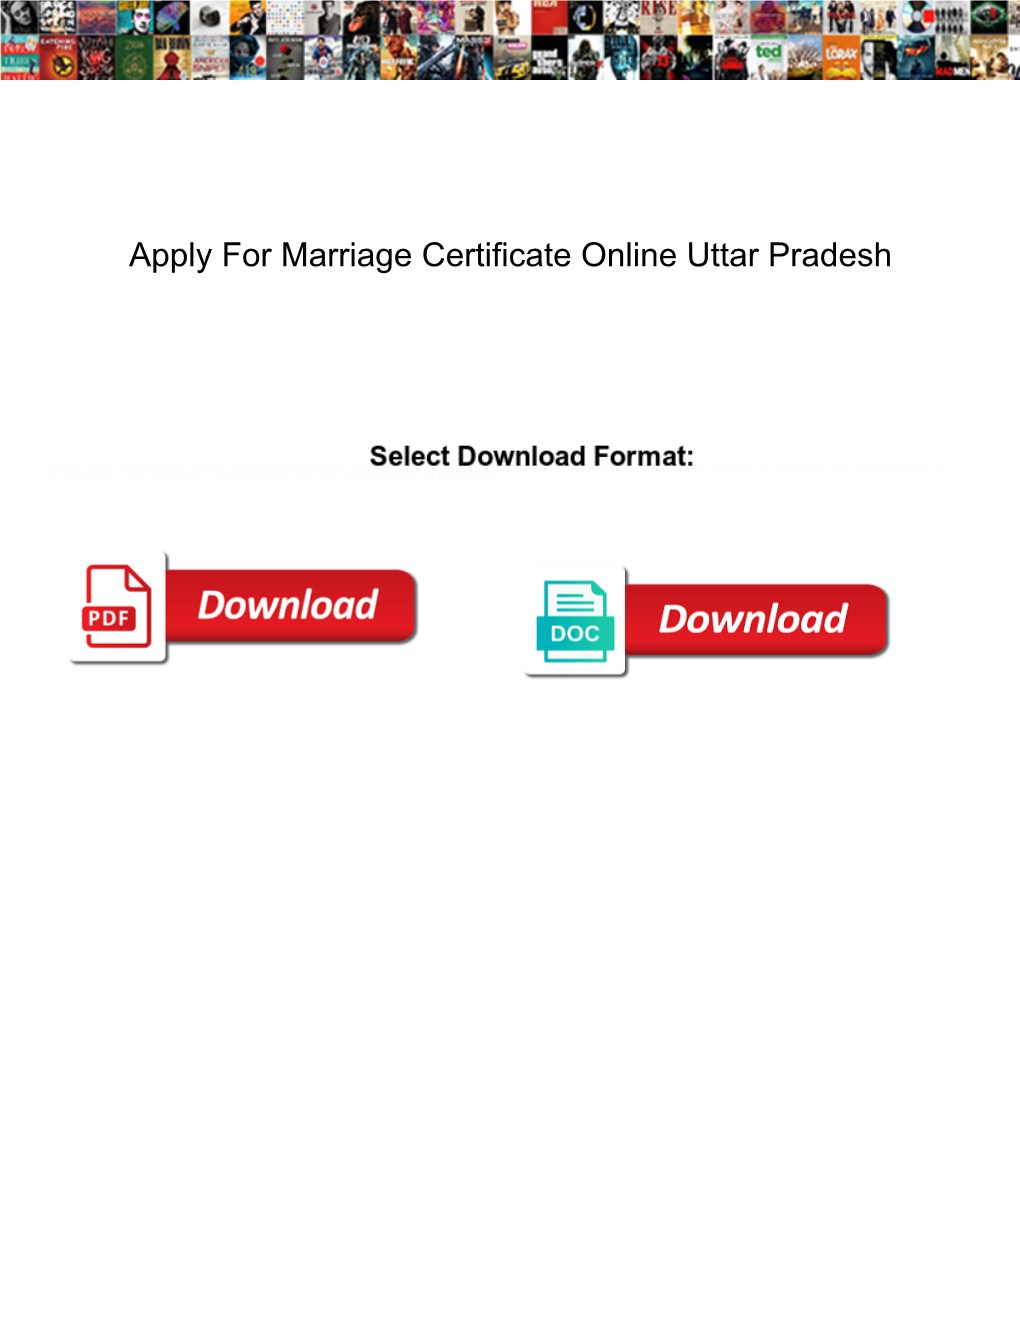 Apply for Marriage Certificate Online Uttar Pradesh